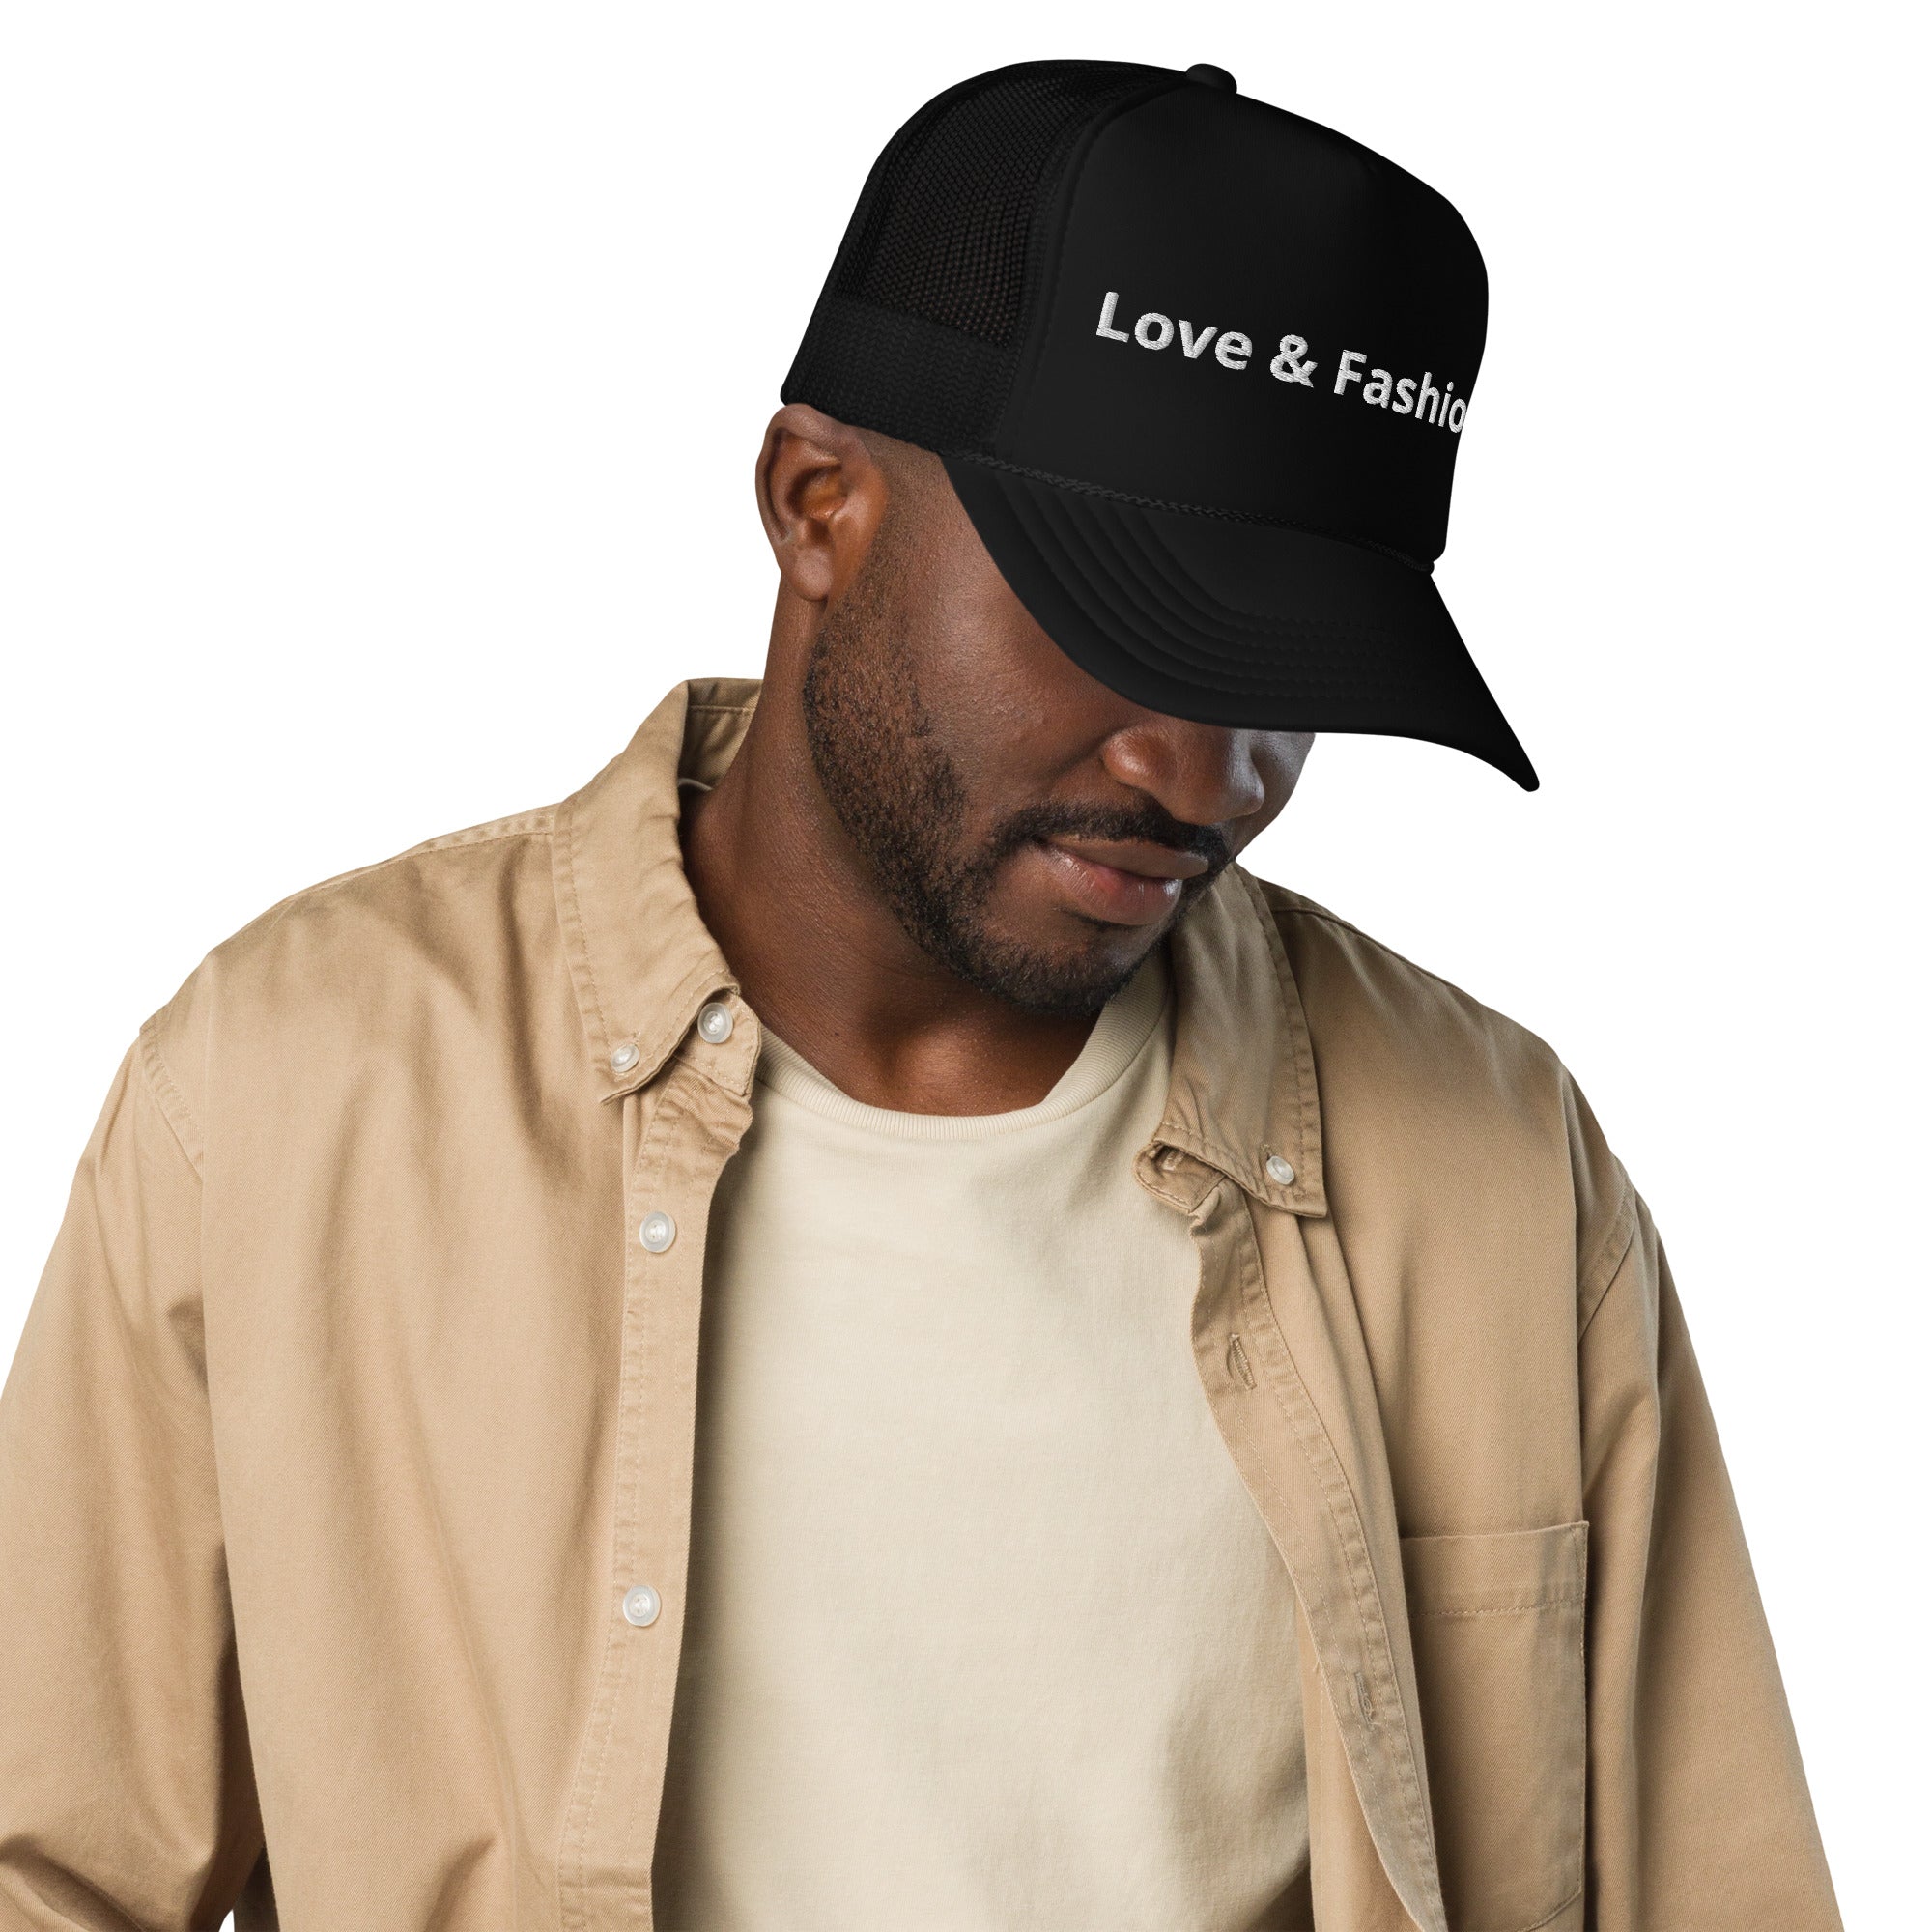 "Love & Fashion" Foam trucker hat